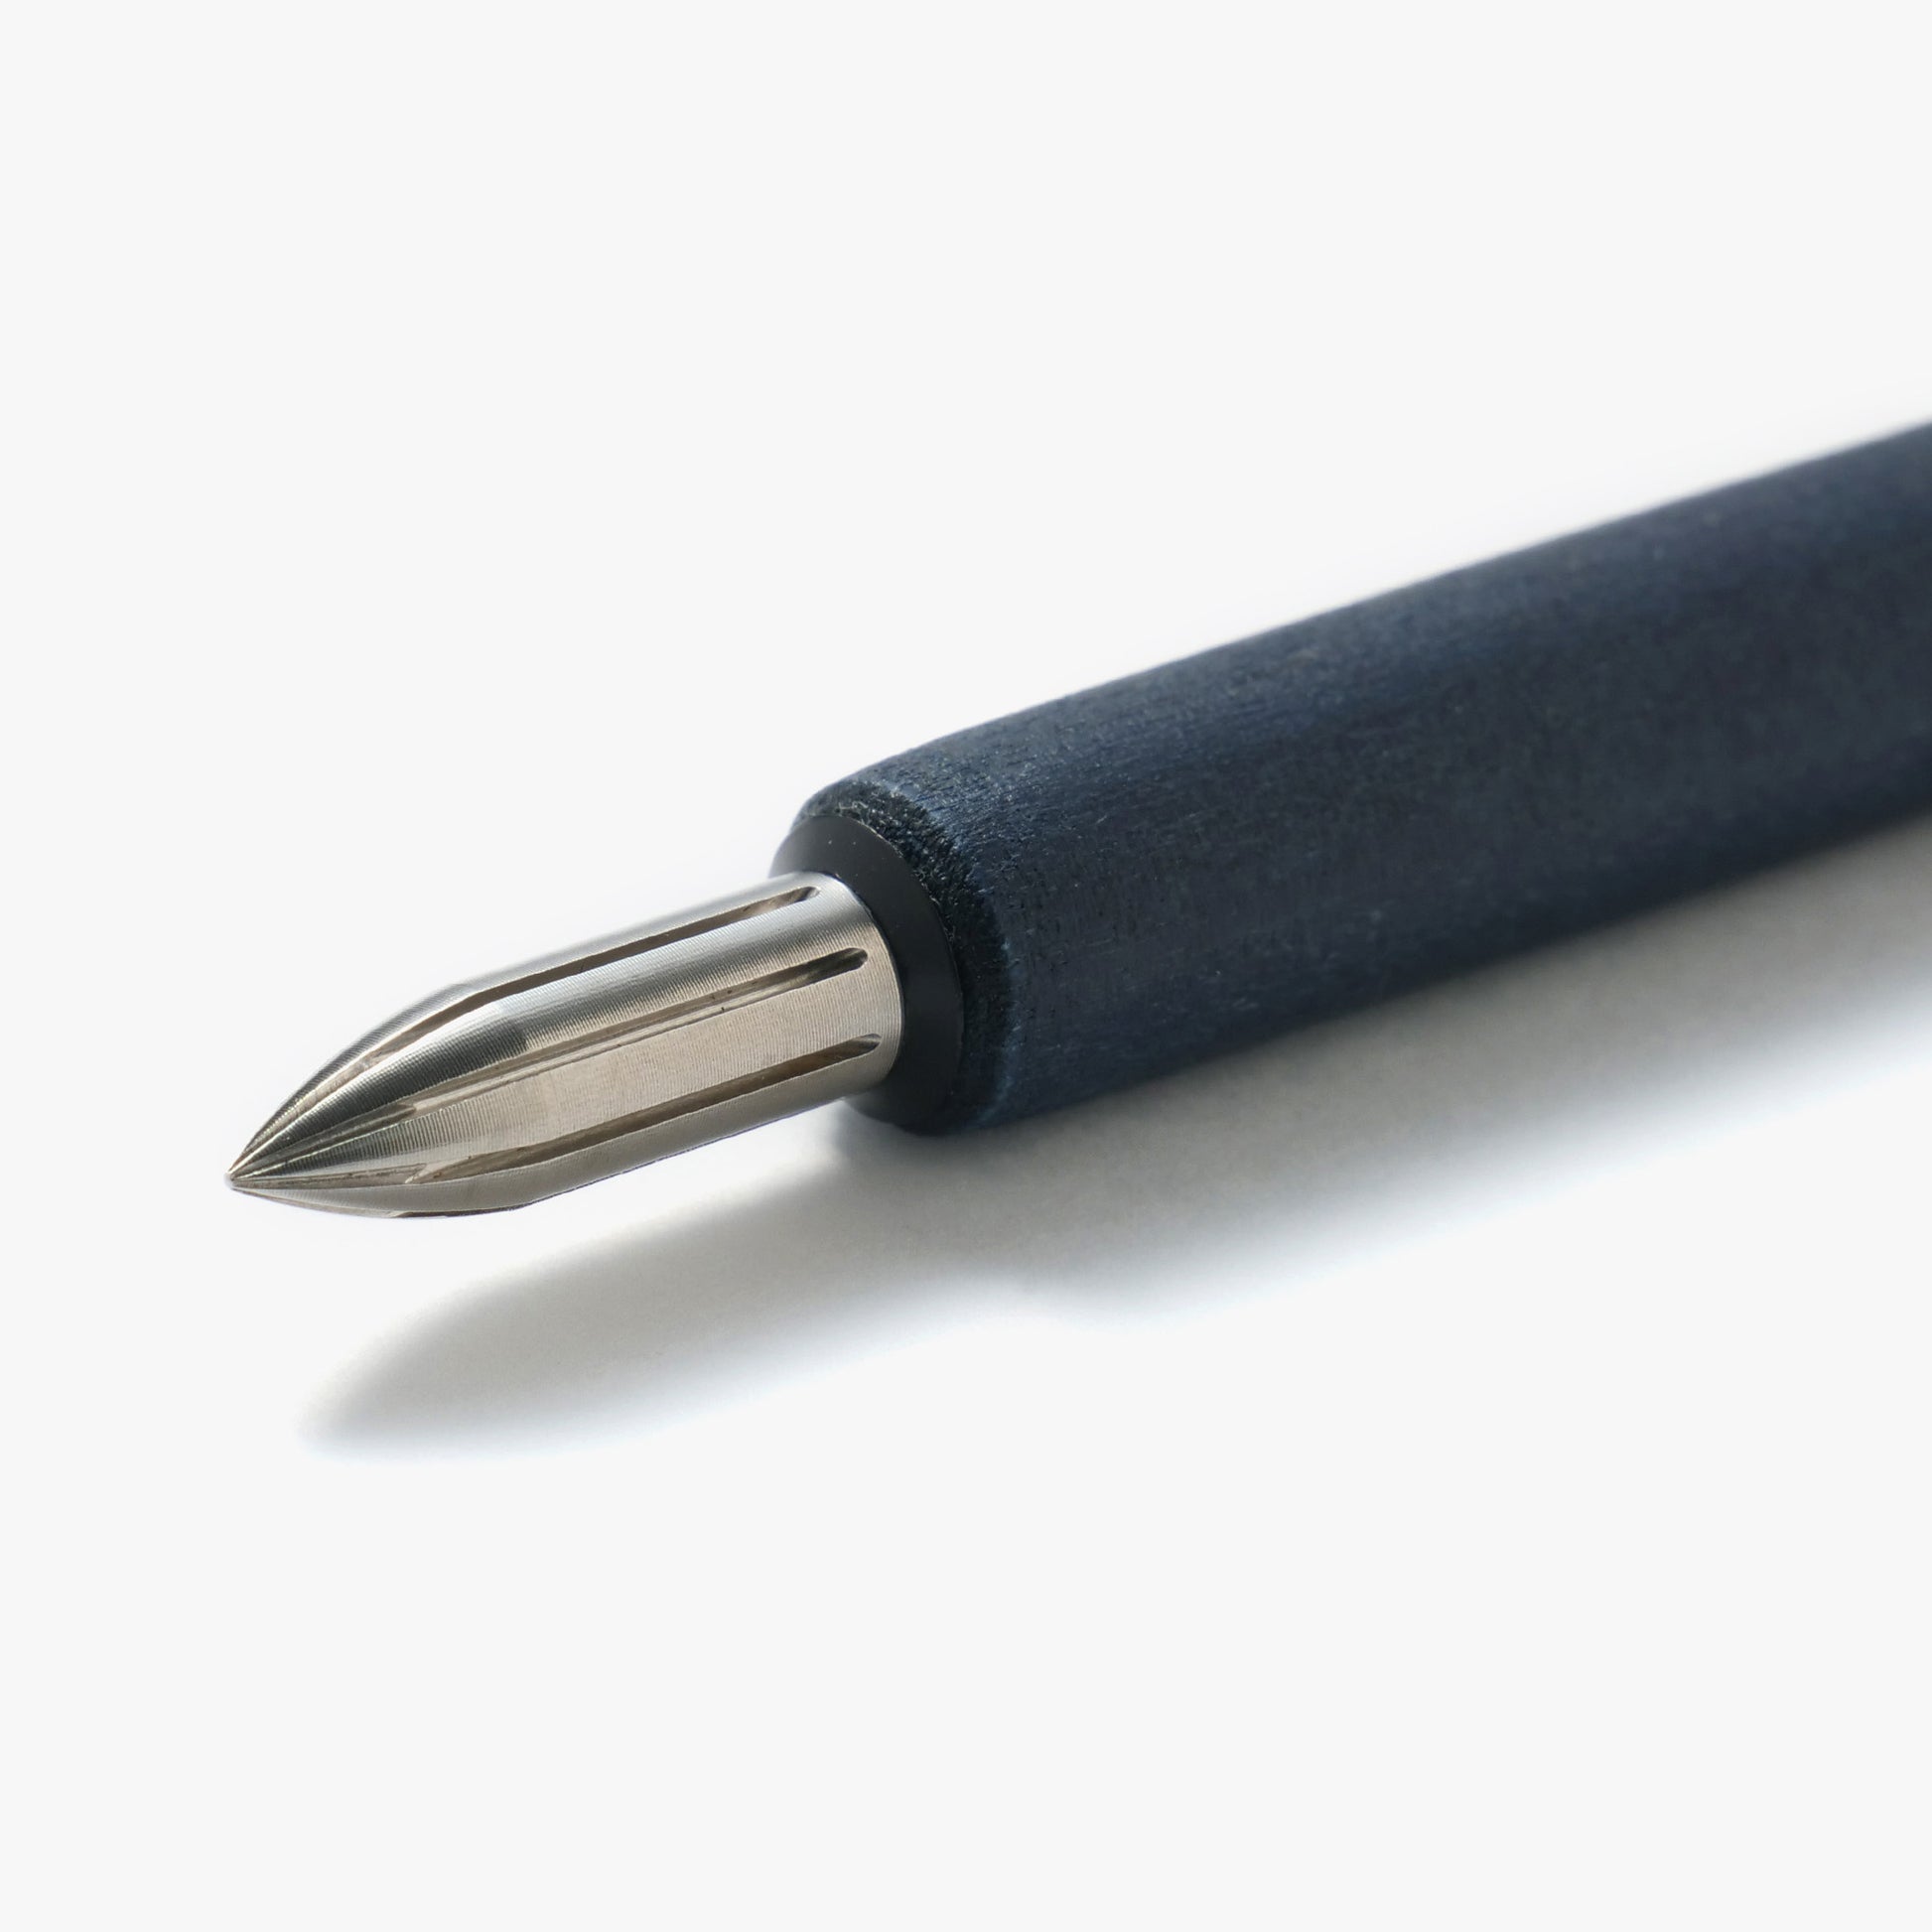 Kakimori Metal Nib - Steel - Dip Pen Nib - Made in Japan Up close